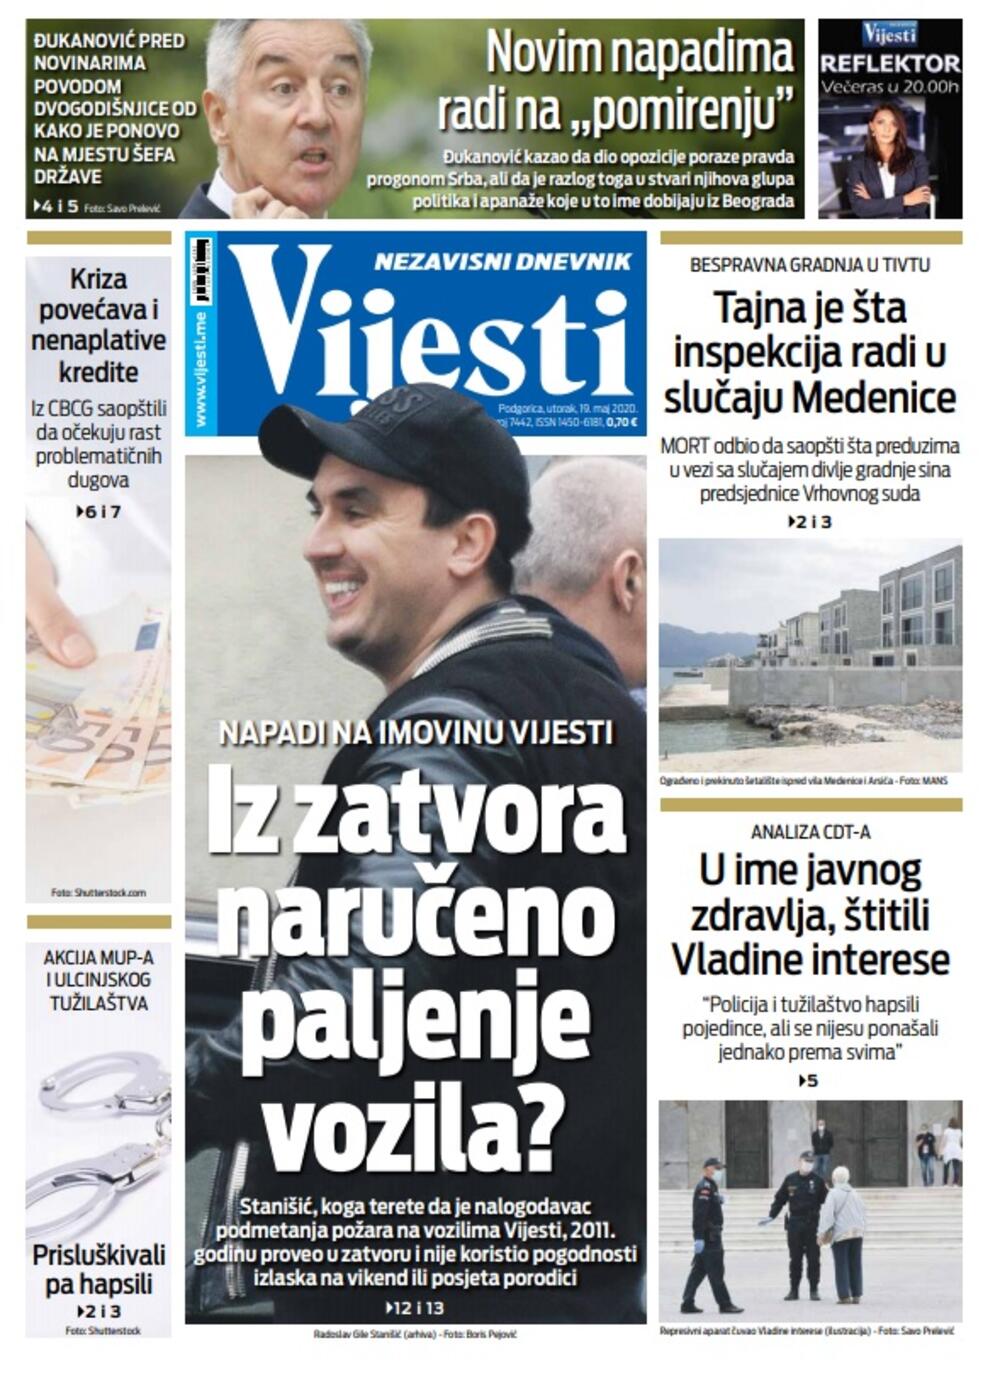 Naslovna strana "Vijesti" za utorak 19. maj 2020. godine